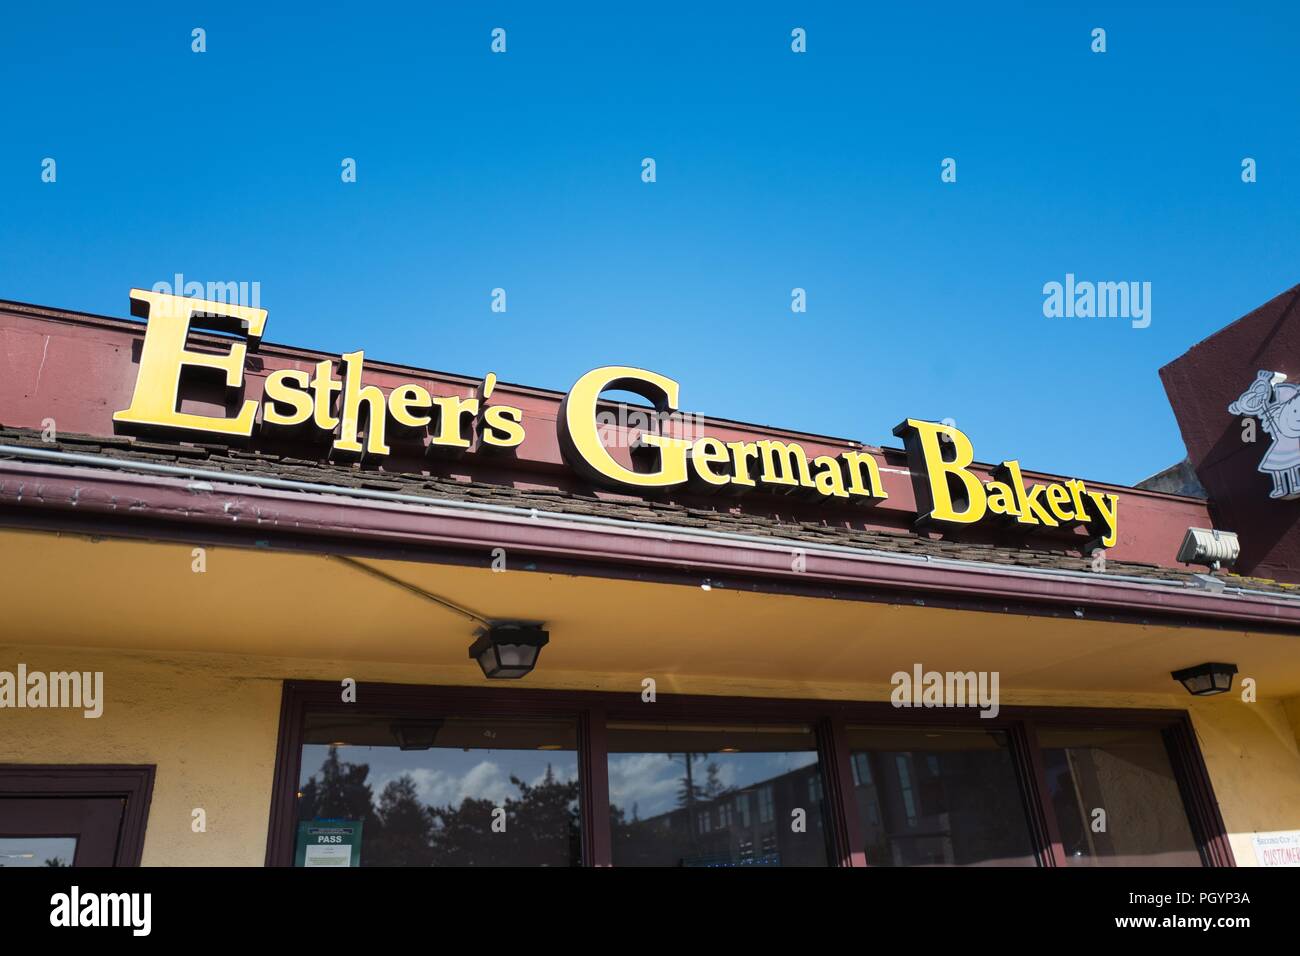 Zeichen auf der Fassade von Esther's German Bakery, einem deutschen Restaurant und Bäckerei, die unter Technik Arbeitnehmer ist populär und ist für Sein ein Liebling der Facebook Gründer Mark Zuckerberg bekannt, im Silicon Valley, Los Altos, Kalifornien, 30. Mai 2018. () Stockfoto